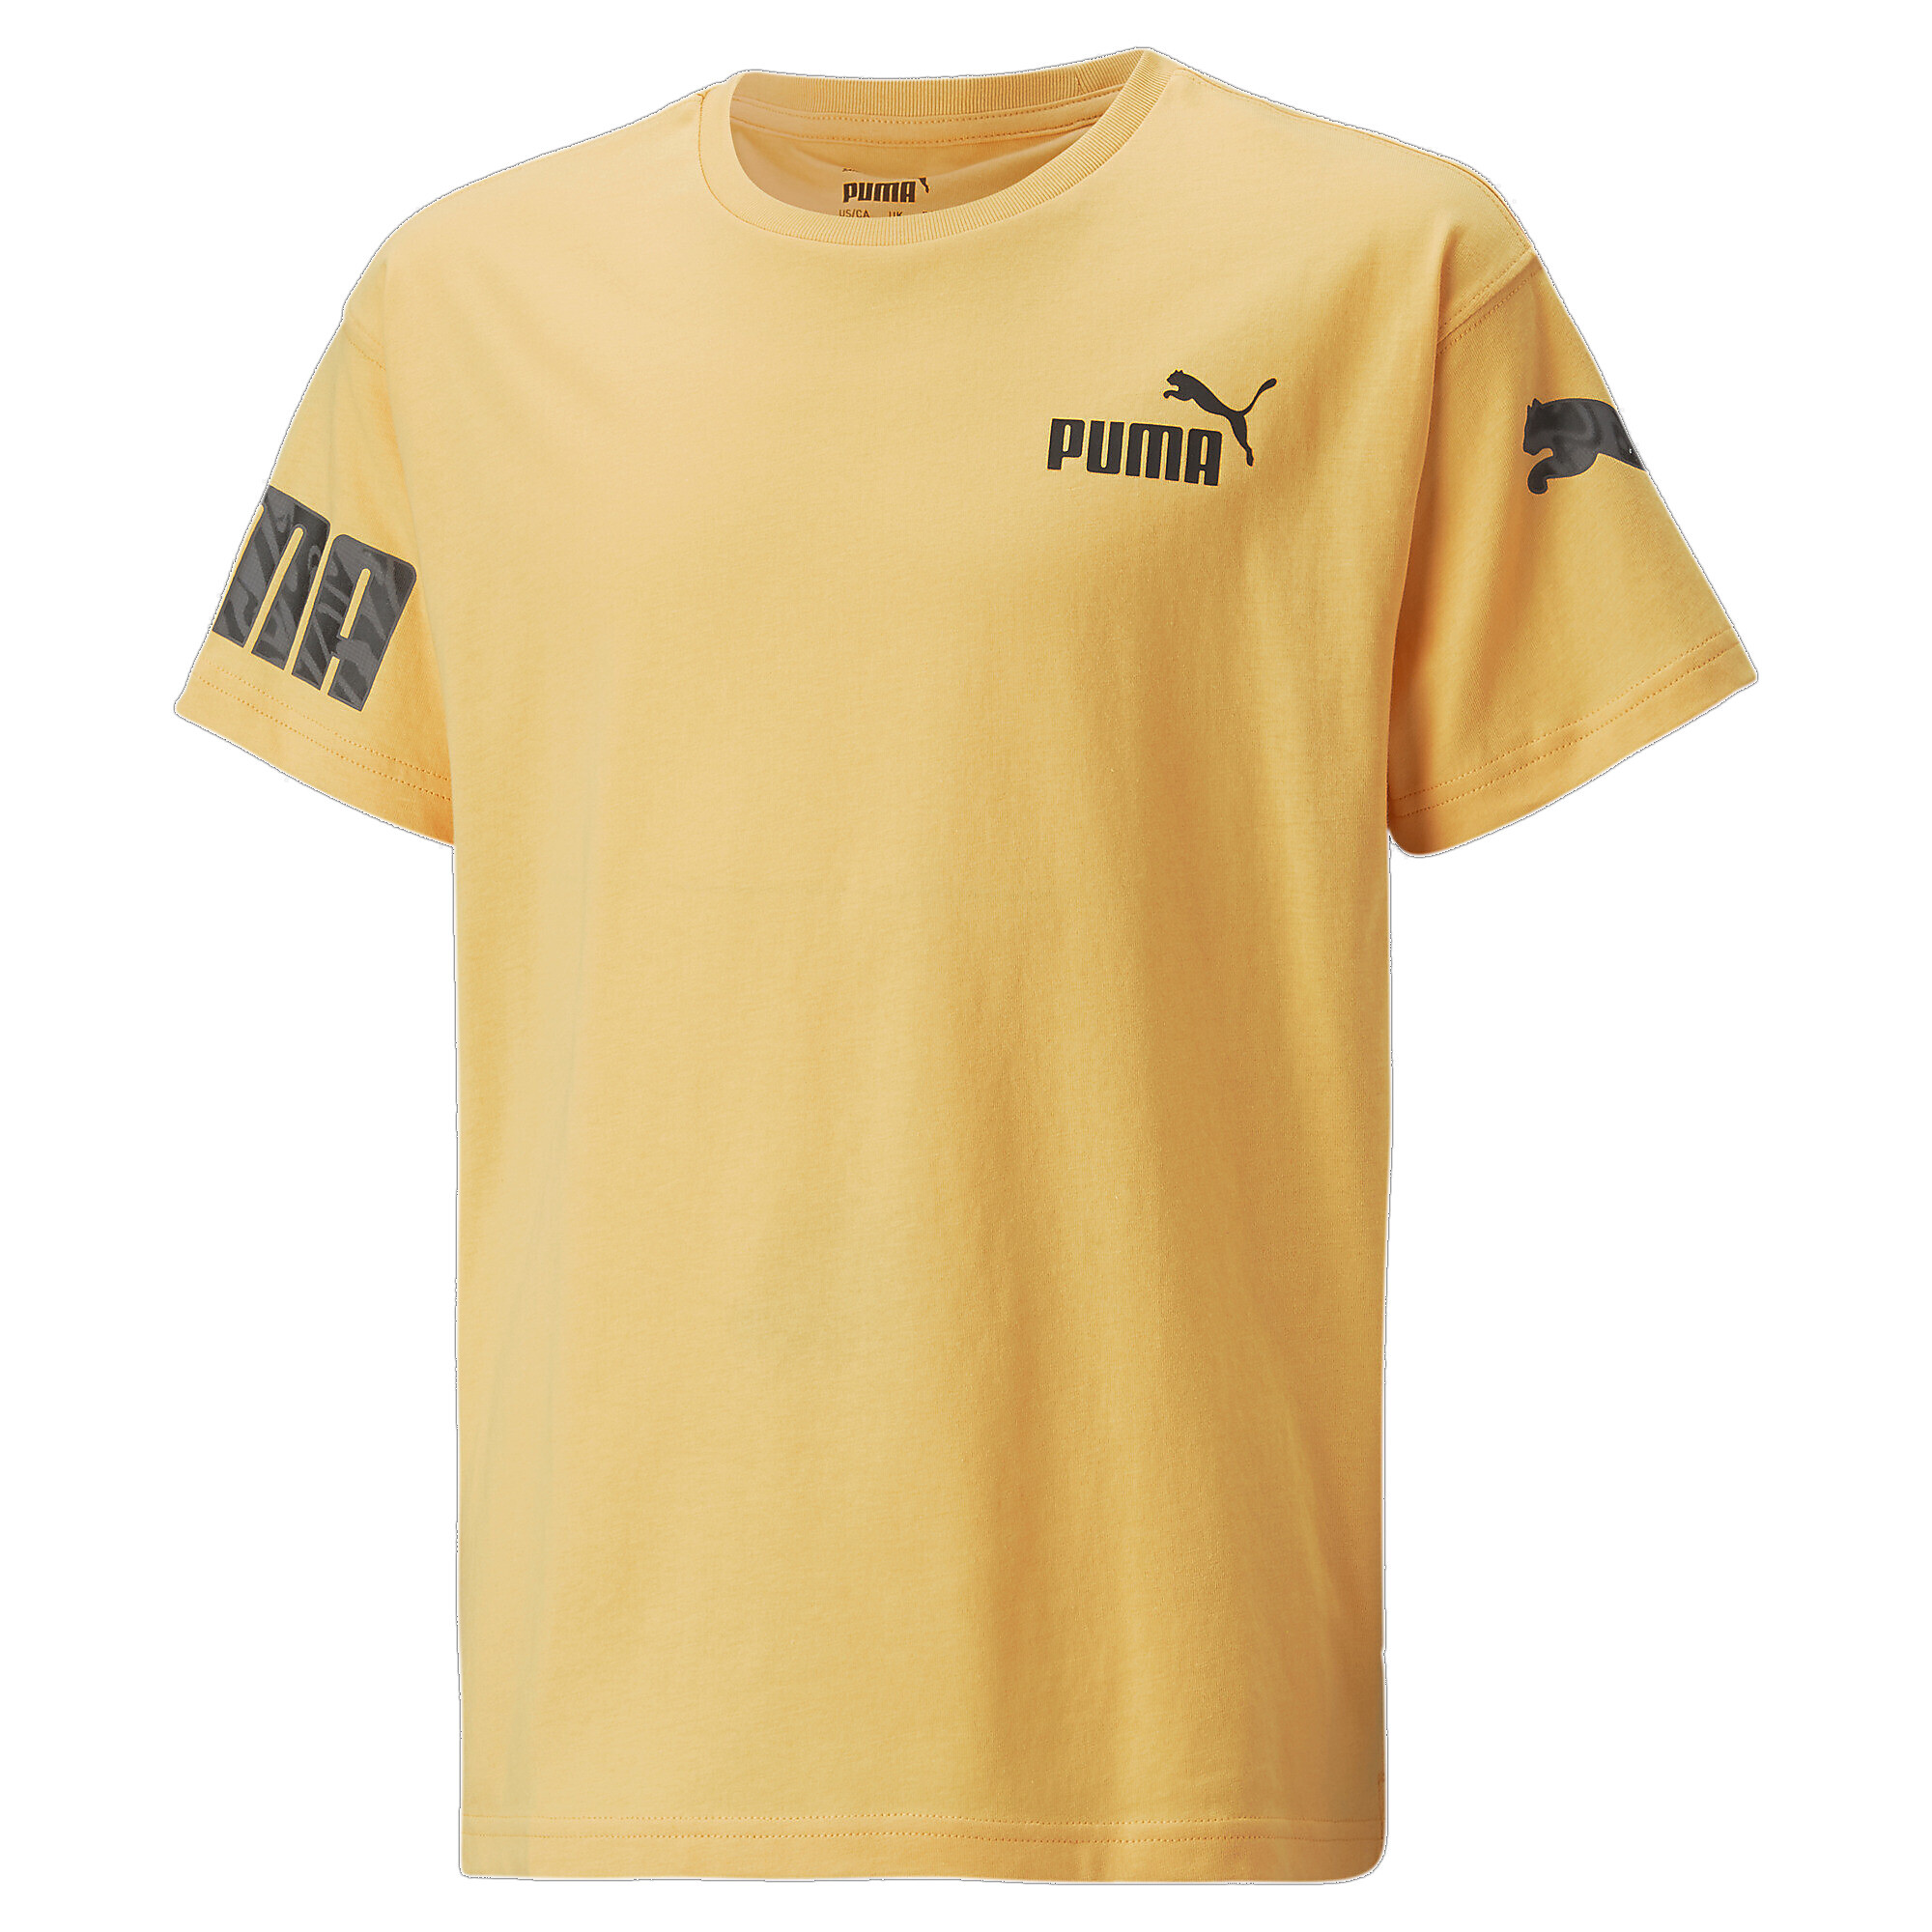 30%OFF！ プーマ キッズ ボーイズ PUMA POWER サマー 半袖 Tシャツ 120-160cm メンズ Mustard Seed ｜PUMA.com